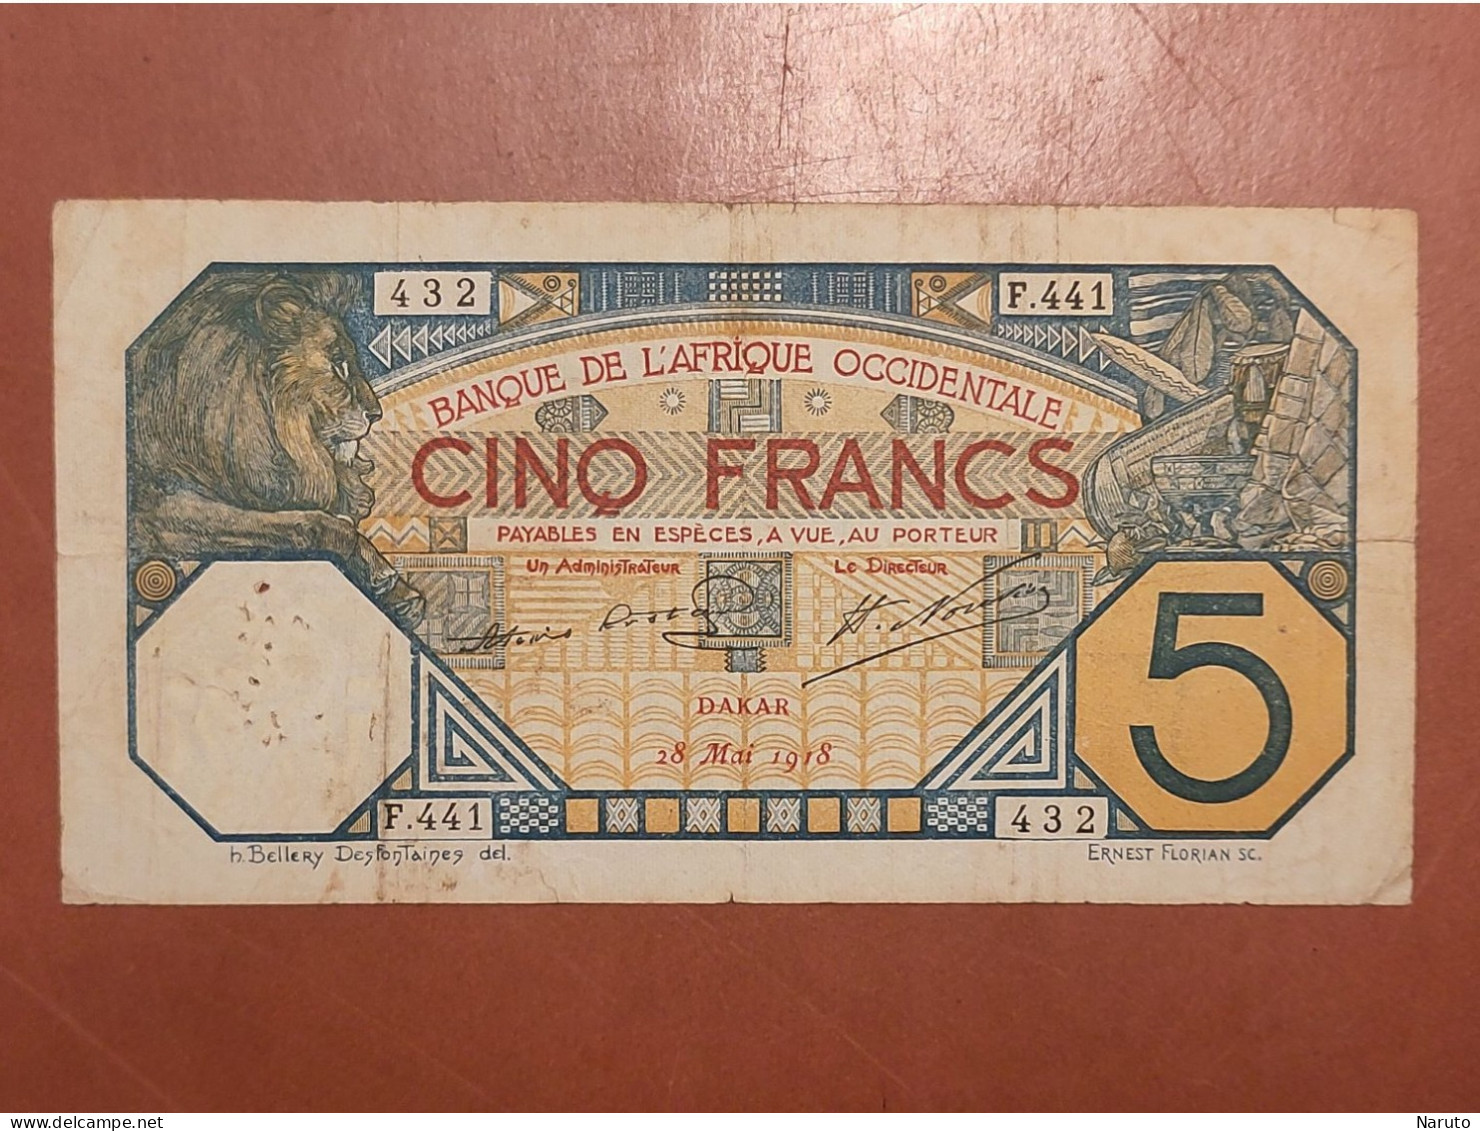 Billet De 5 Francs De La Banque De L'Afrique Occidentale, Dakar, 28 Mai 1918 - Alla Rinfusa - Banconote